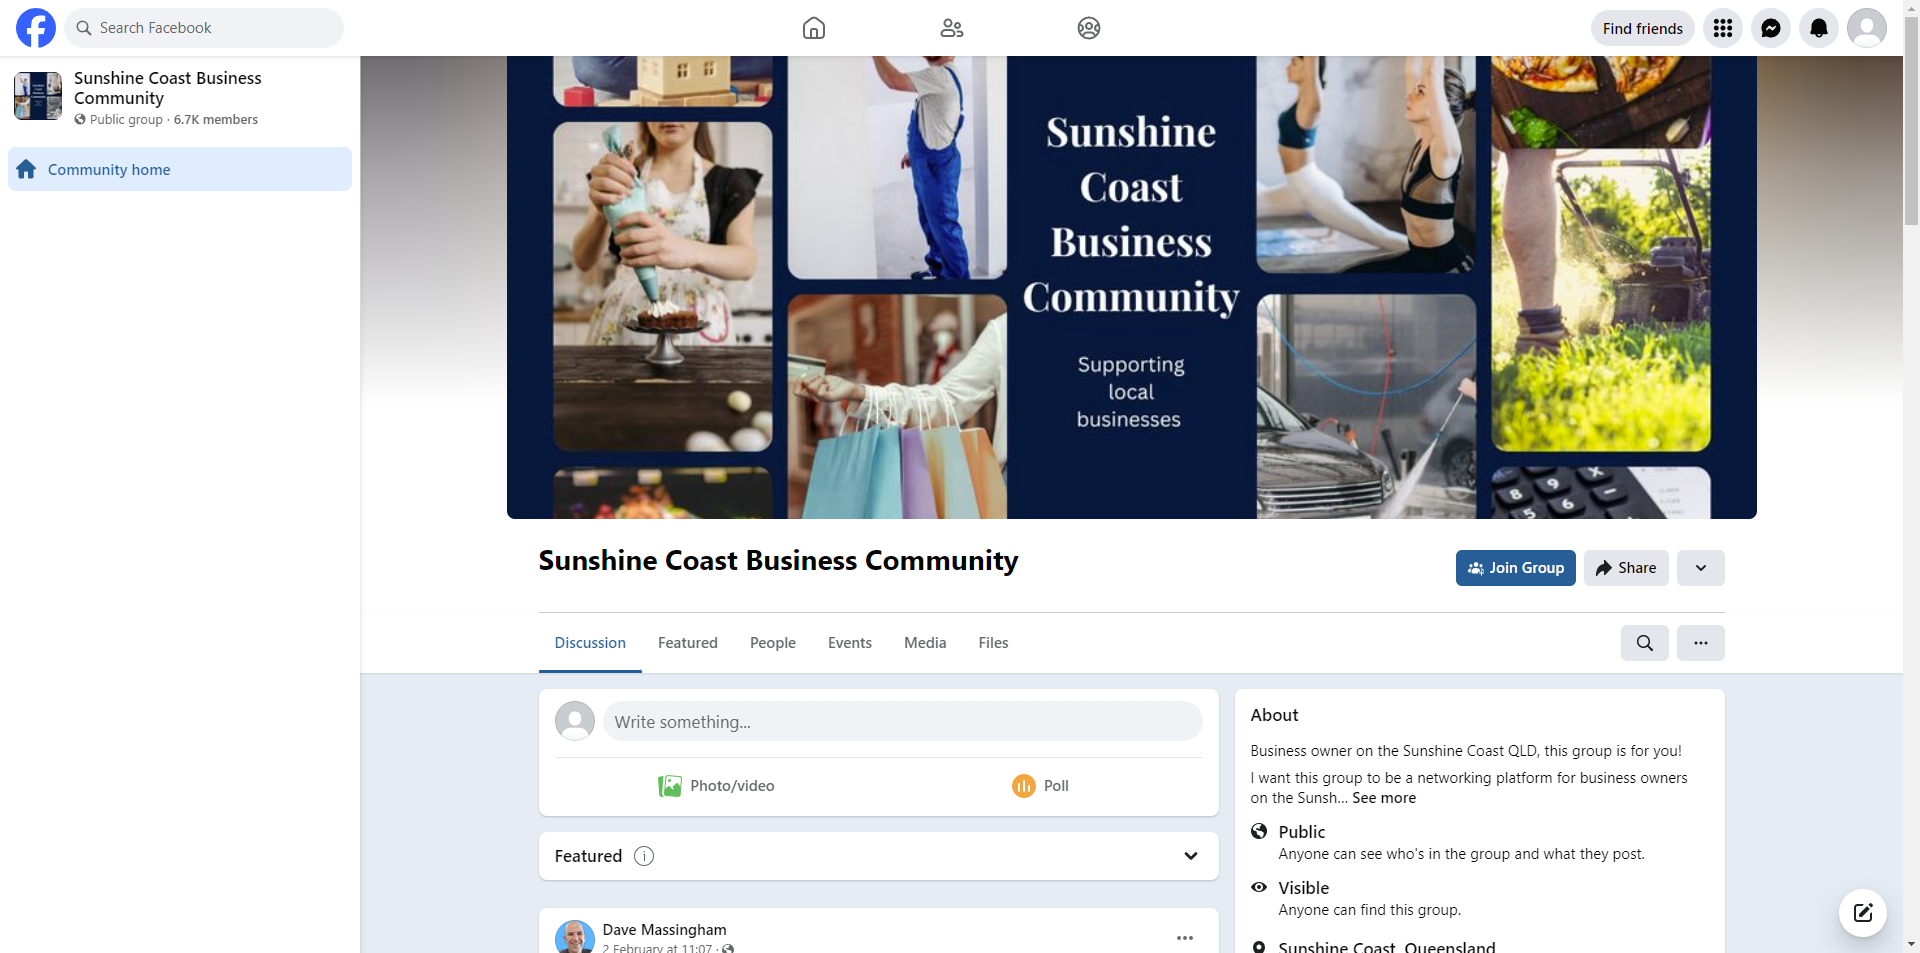 Sunshine Coast Business Community